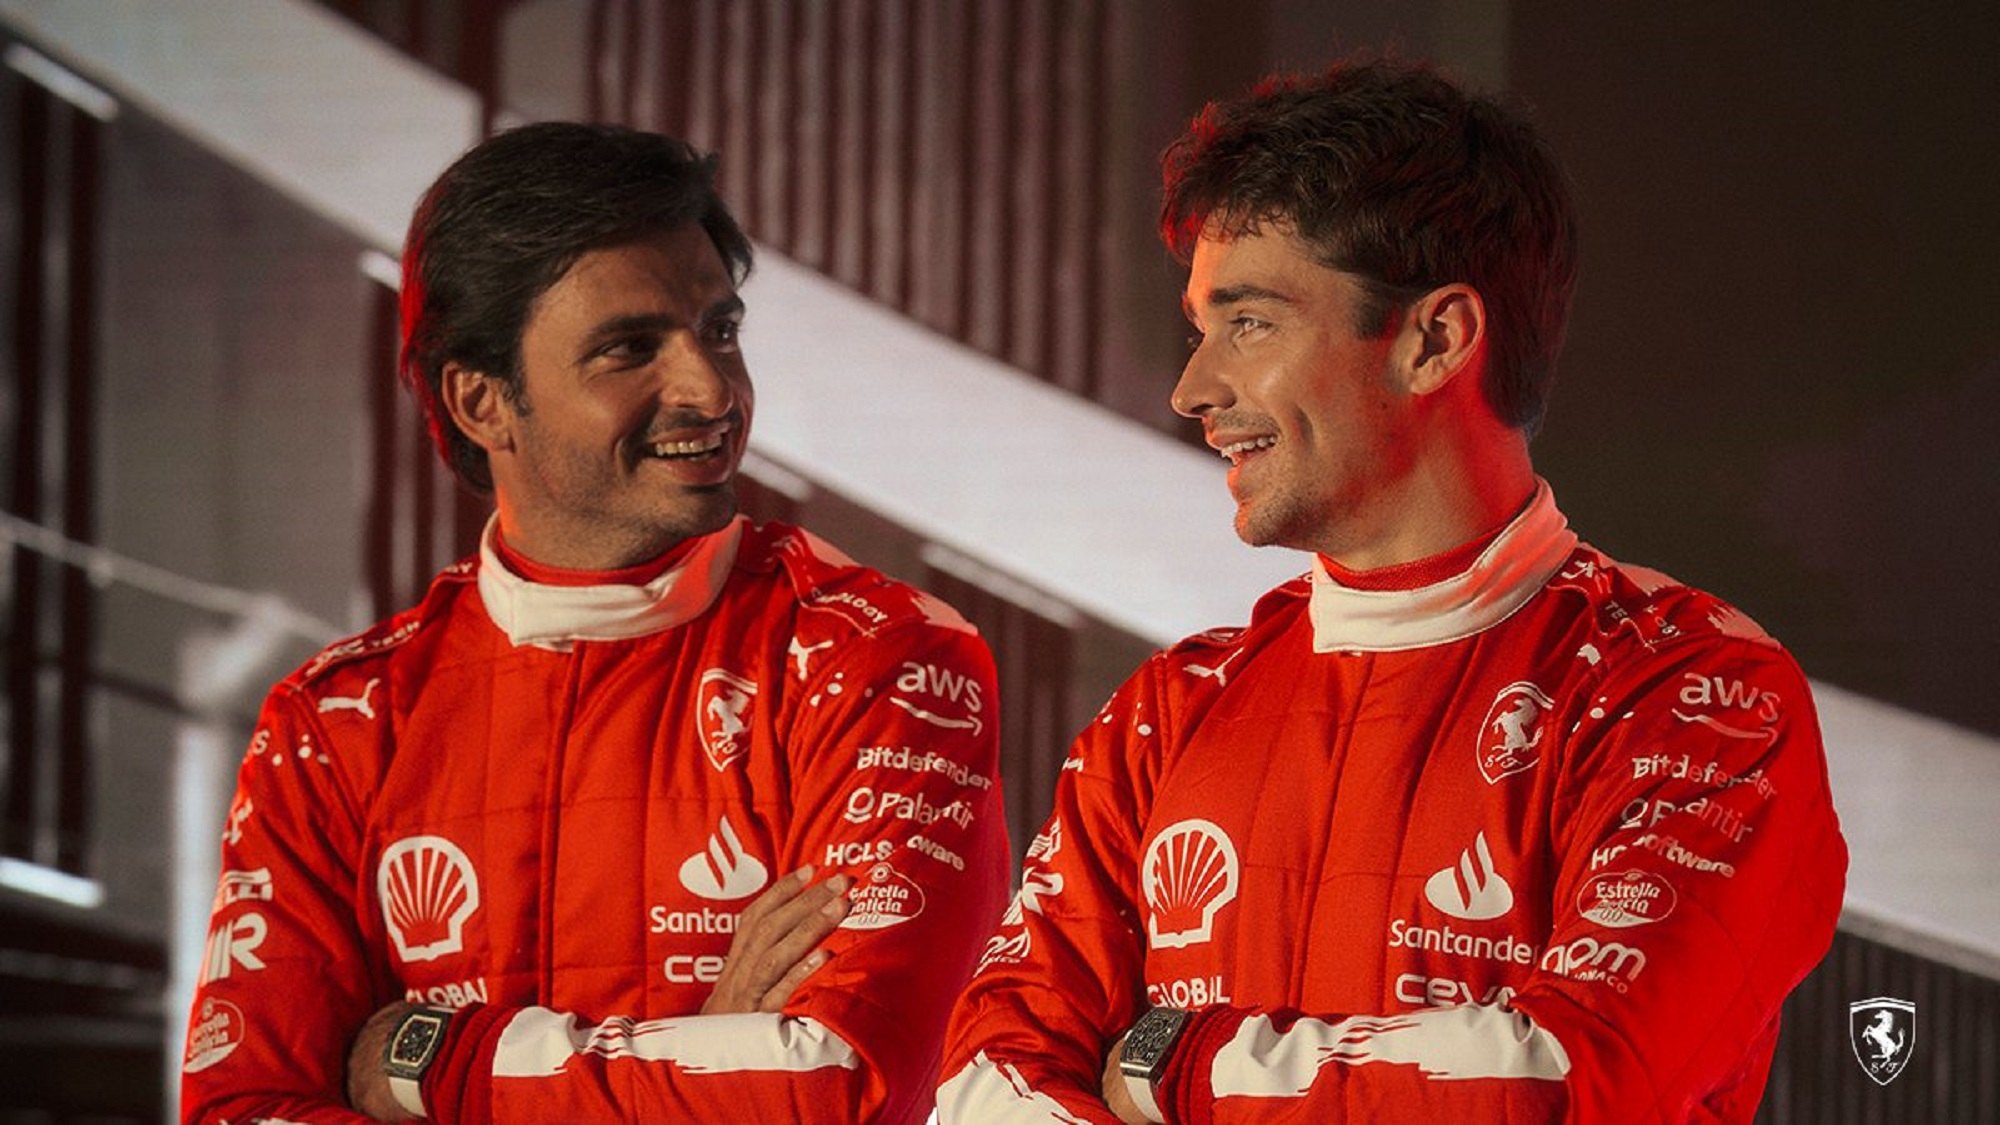 Ferrari s'atreveix amb un altre fitxatge estrella com el de Lewis Hamilton, descarta Fernando Alonso